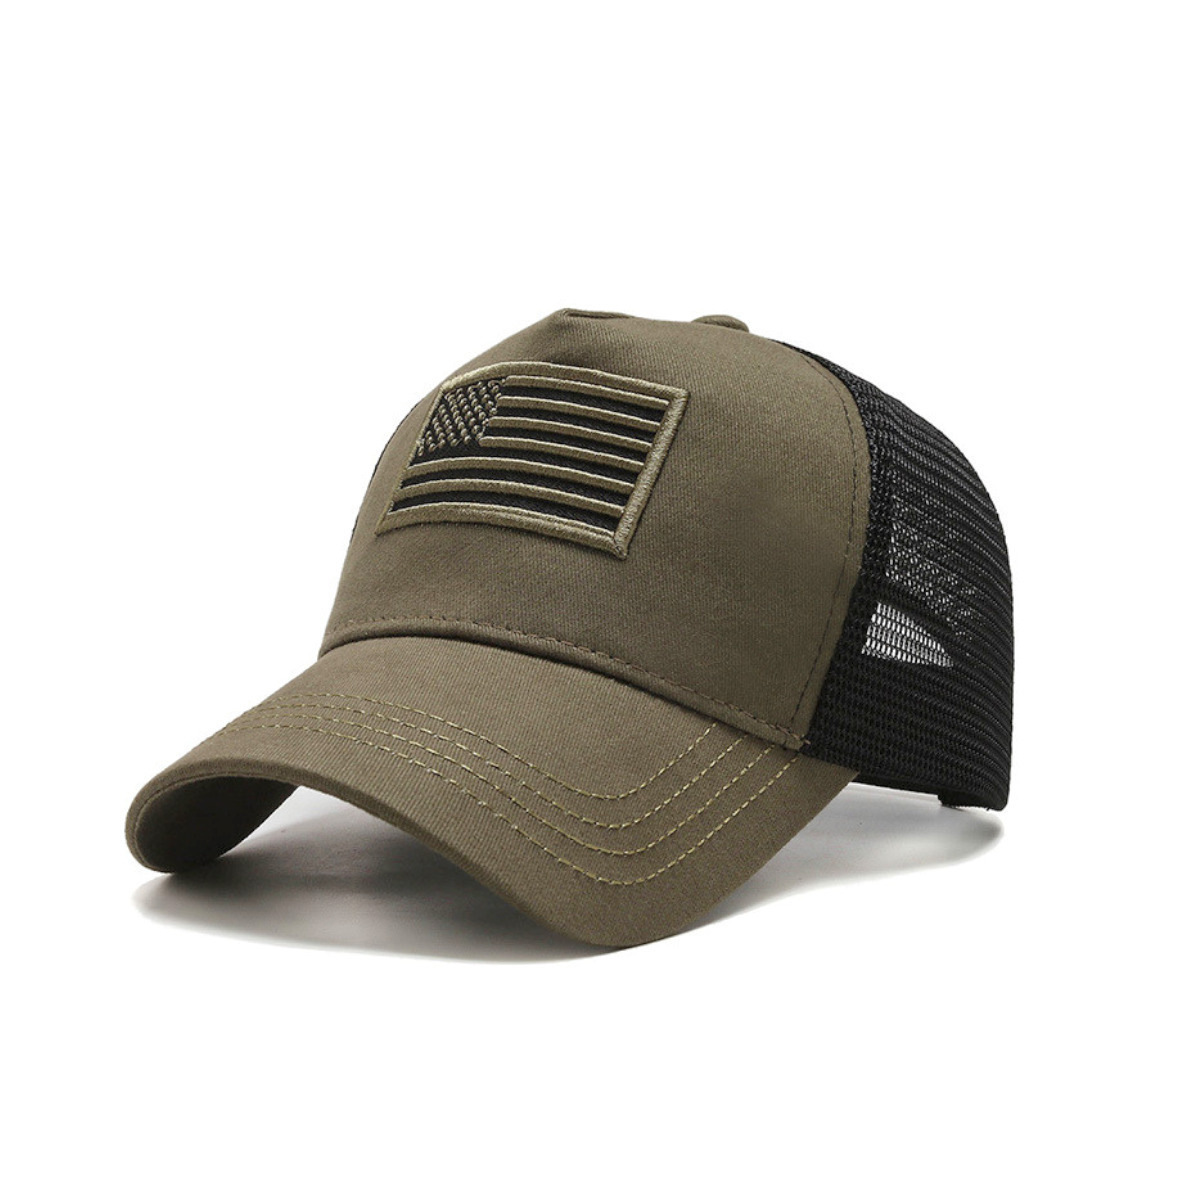 American Flag Trucker Hat With Adjustable Strap - Grey-RWB Flag